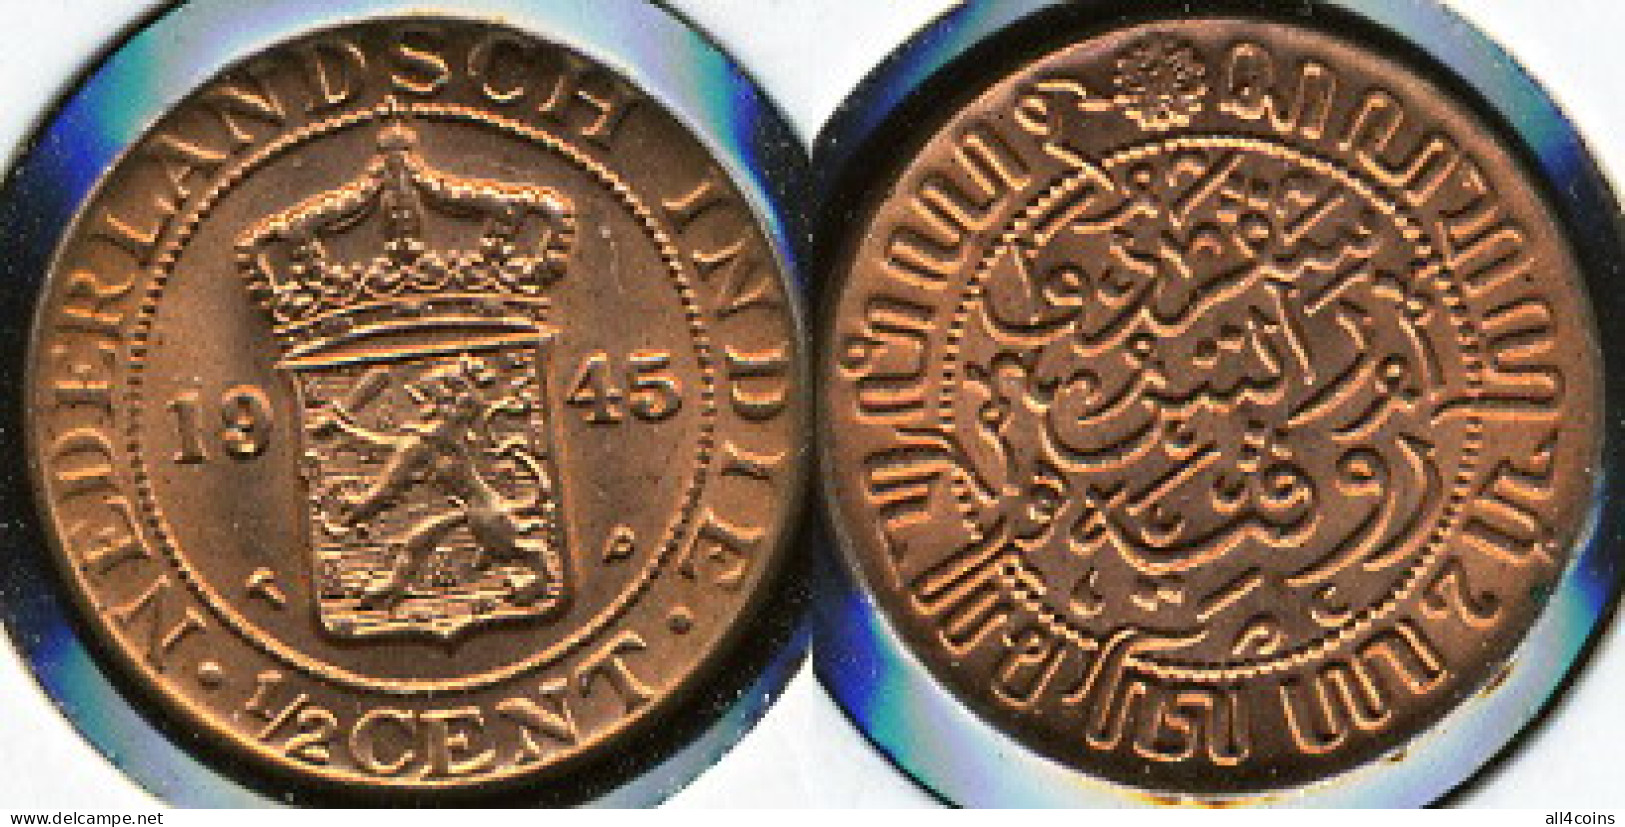 Netherlands East-Indies 1/2 Cent. 1945 (Coin KM#314.2. Unc) - Monete Provinciali